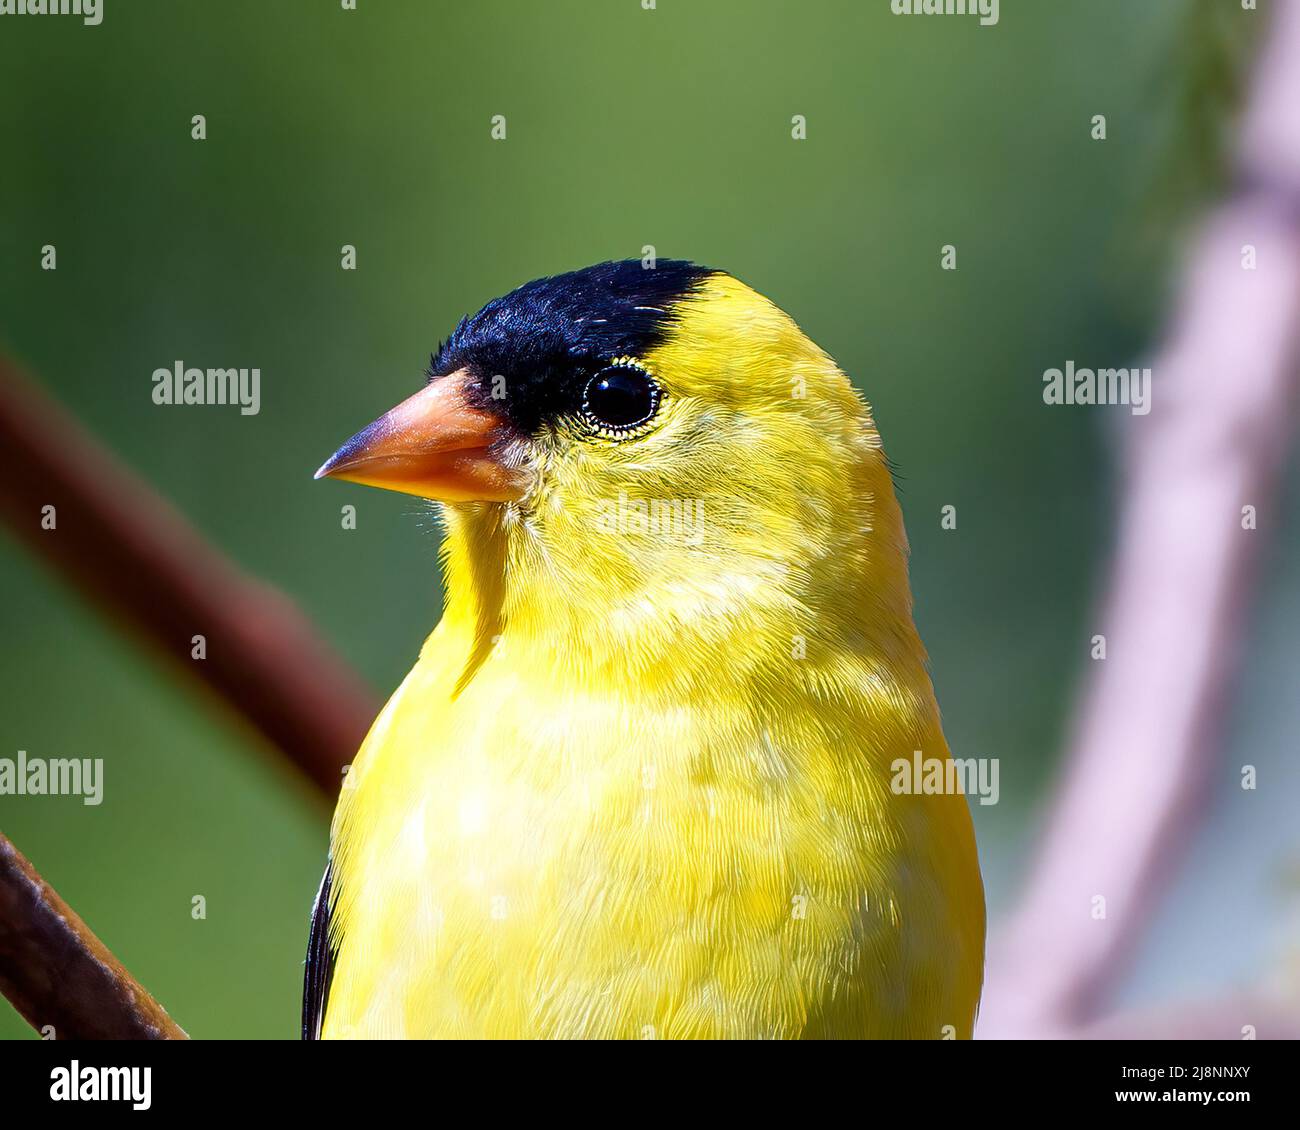 American Goldfinch Kopf Nahaufnahme mit einem weichen verschwommenen grünen Hintergrund in seiner Umgebung und Lebensraum Umgebung und zeigt seine gelbe Feder. Stockfoto